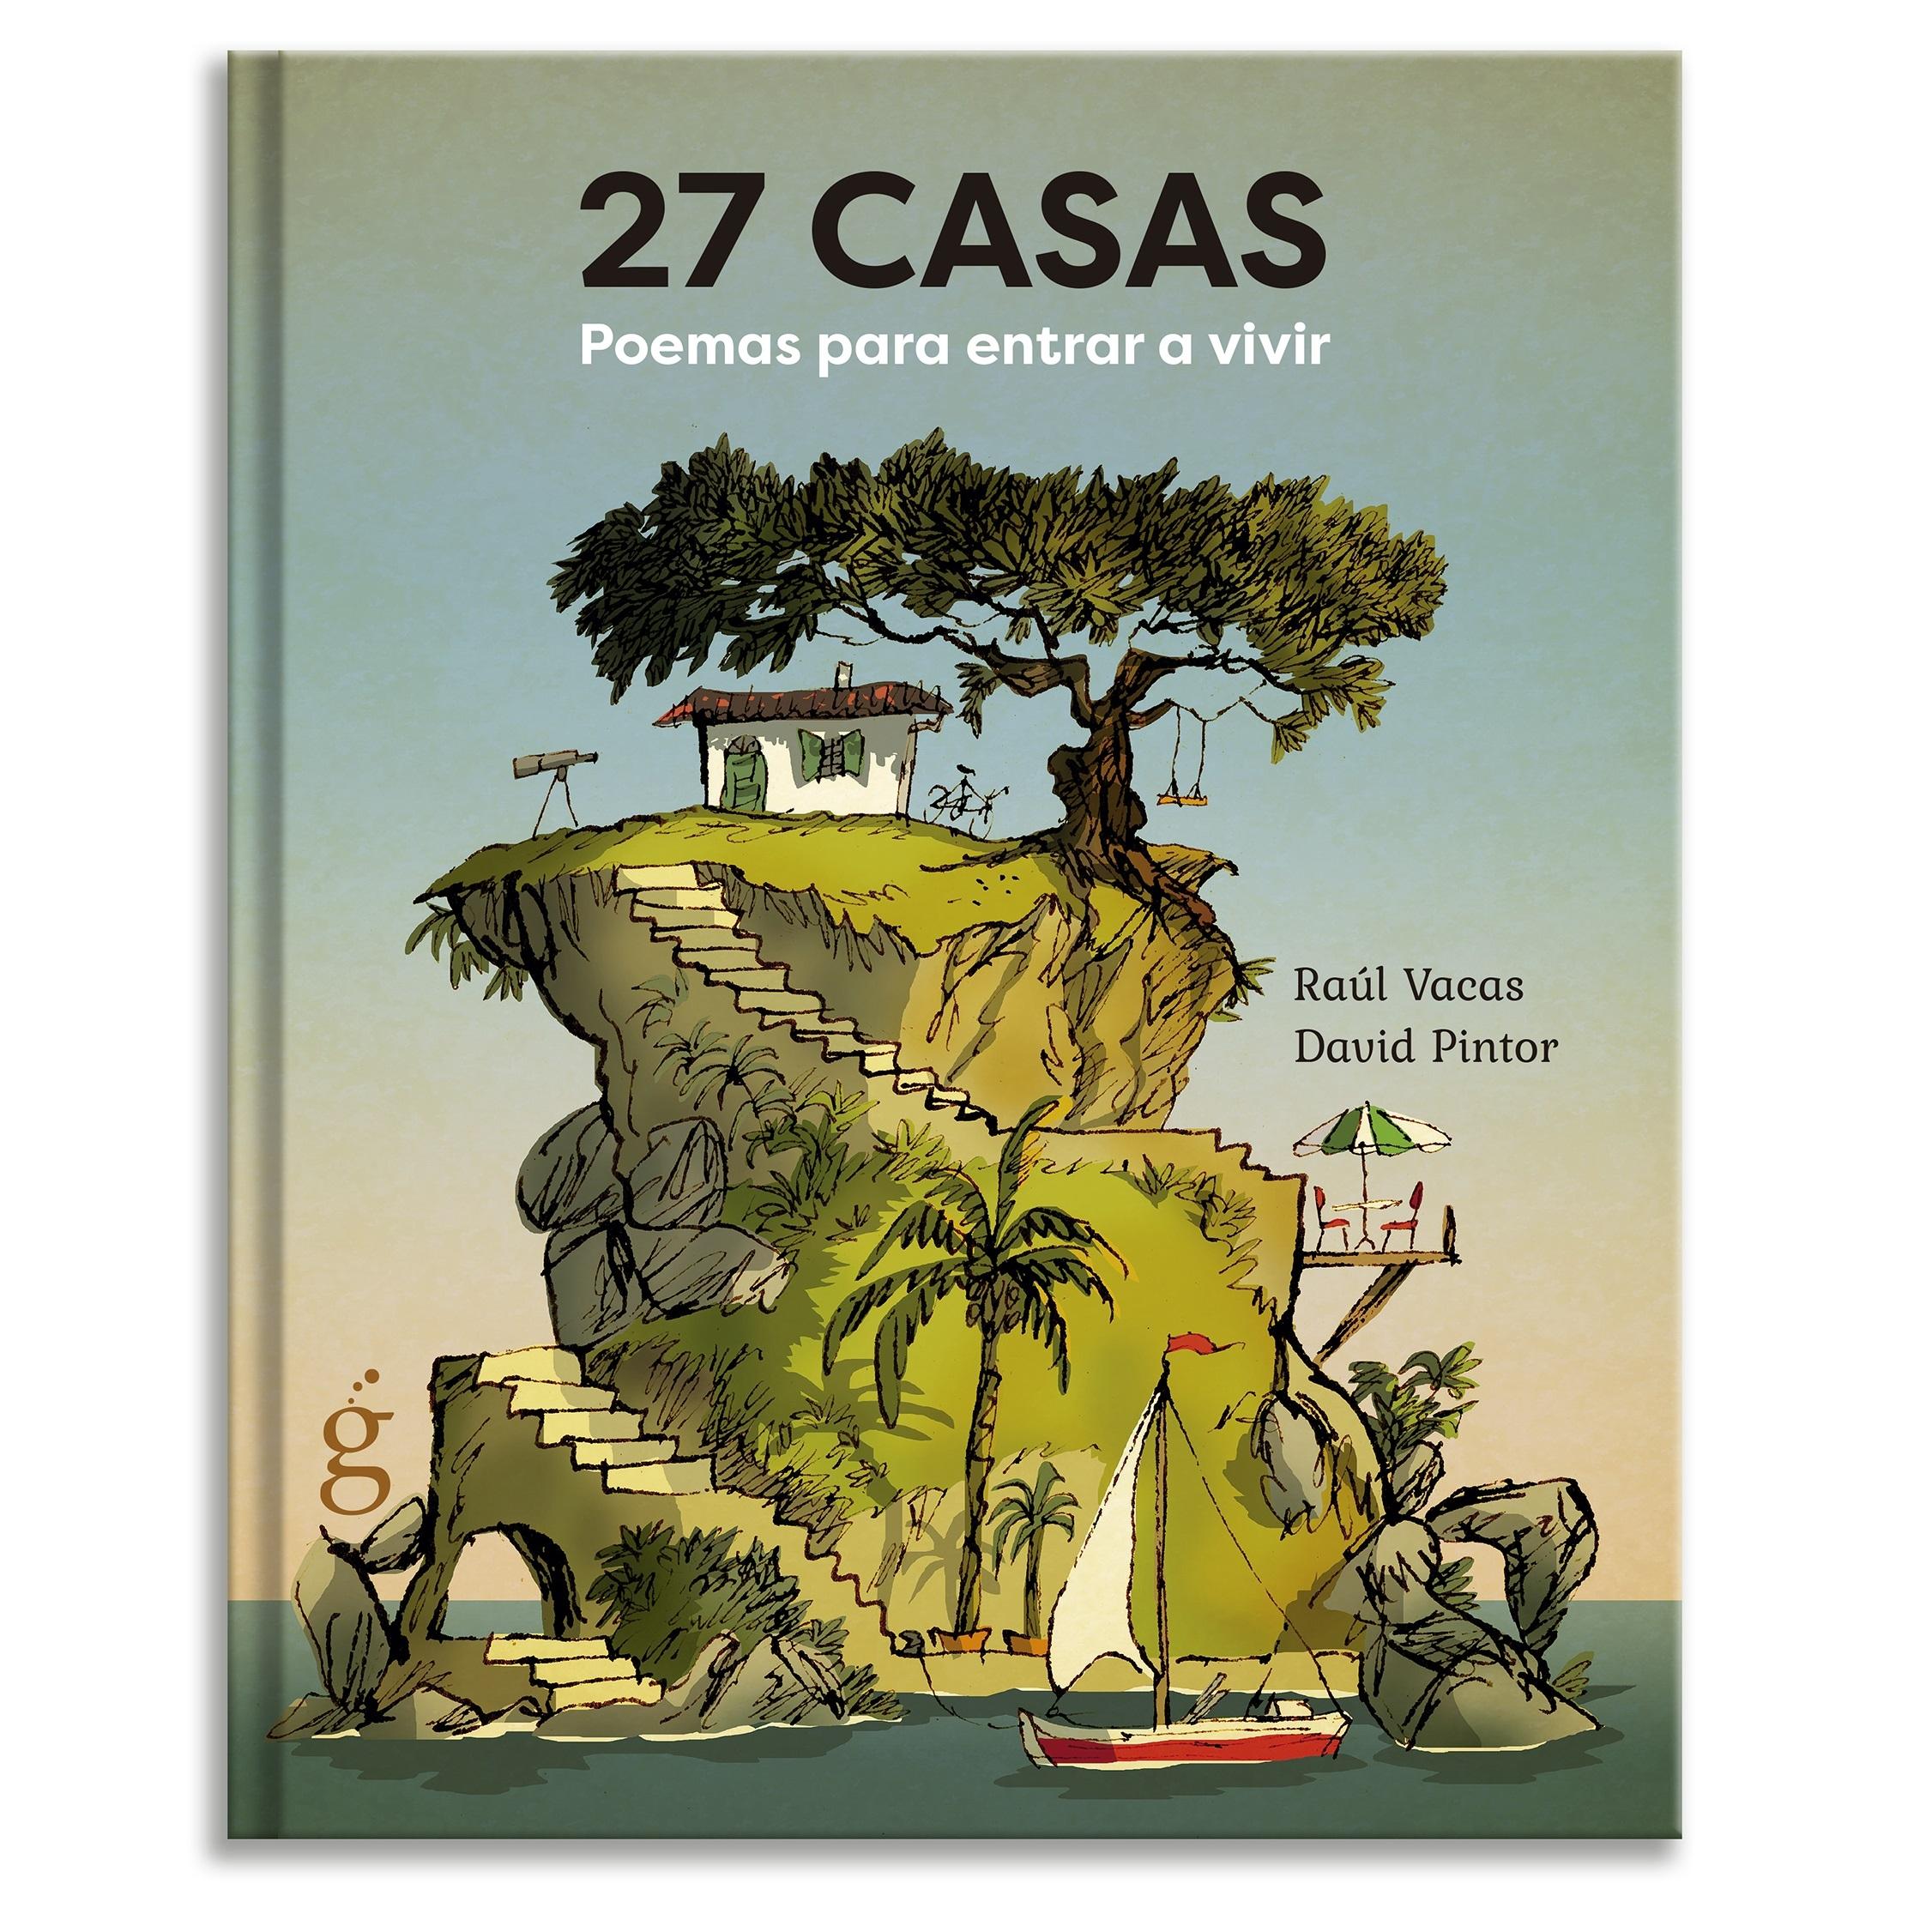 27 Casas "Poemas para entrar a vivir". 